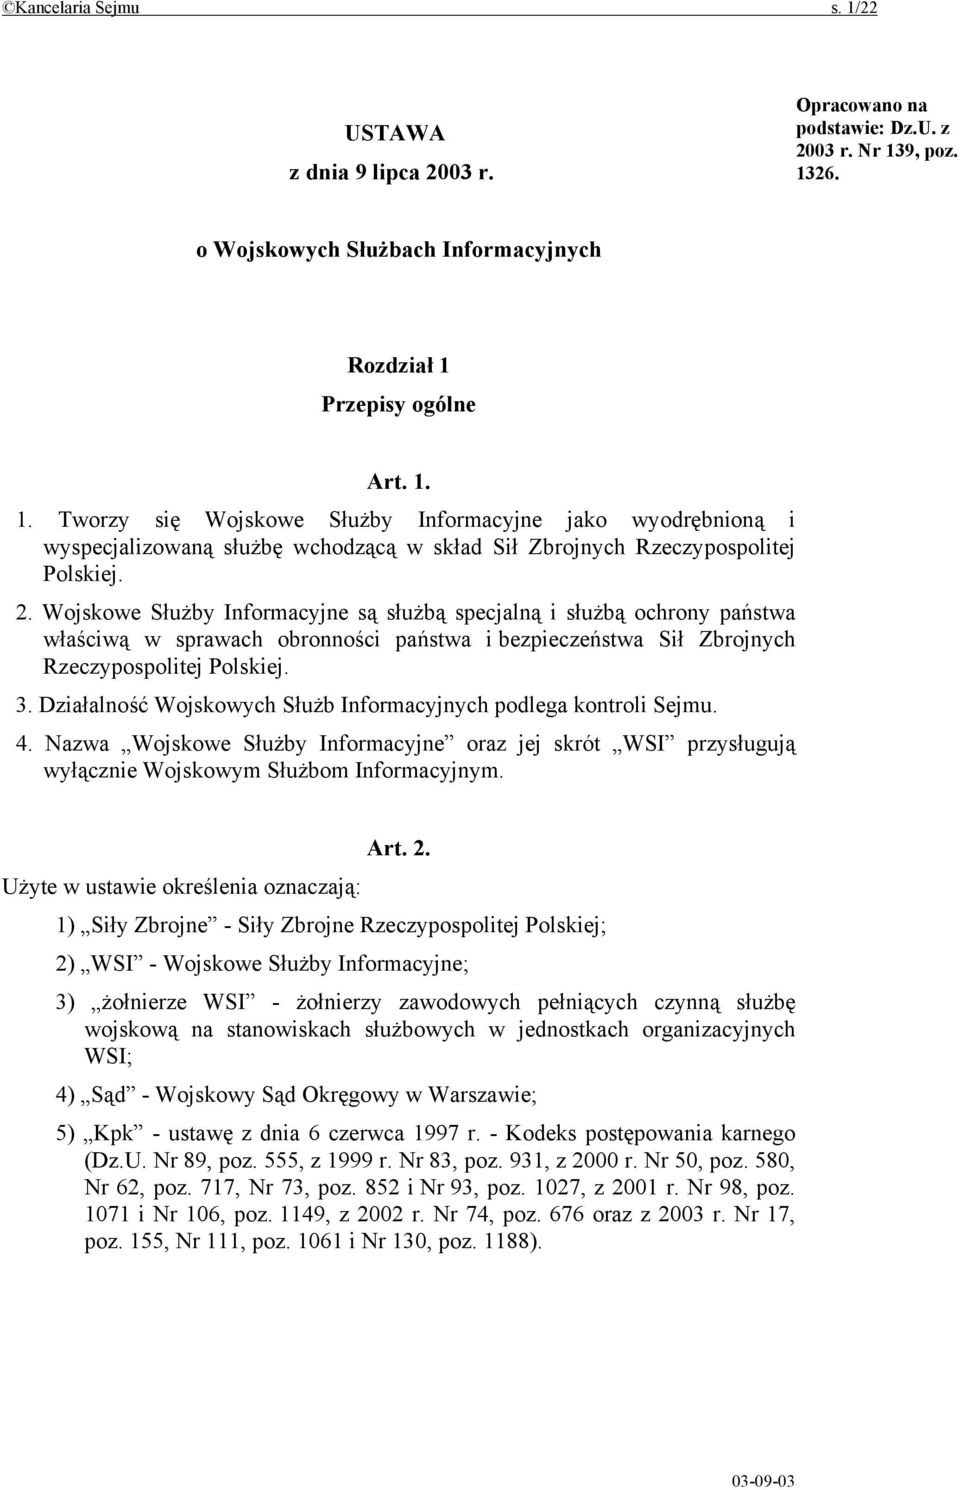 Działalność Wojskowych Służb Informacyjnych podlega kontroli Sejmu. 4. Nazwa Wojskowe Służby Informacyjne oraz jej skrót WSI przysługują wyłącznie Wojskowym Służbom Informacyjnym. Art. 2.